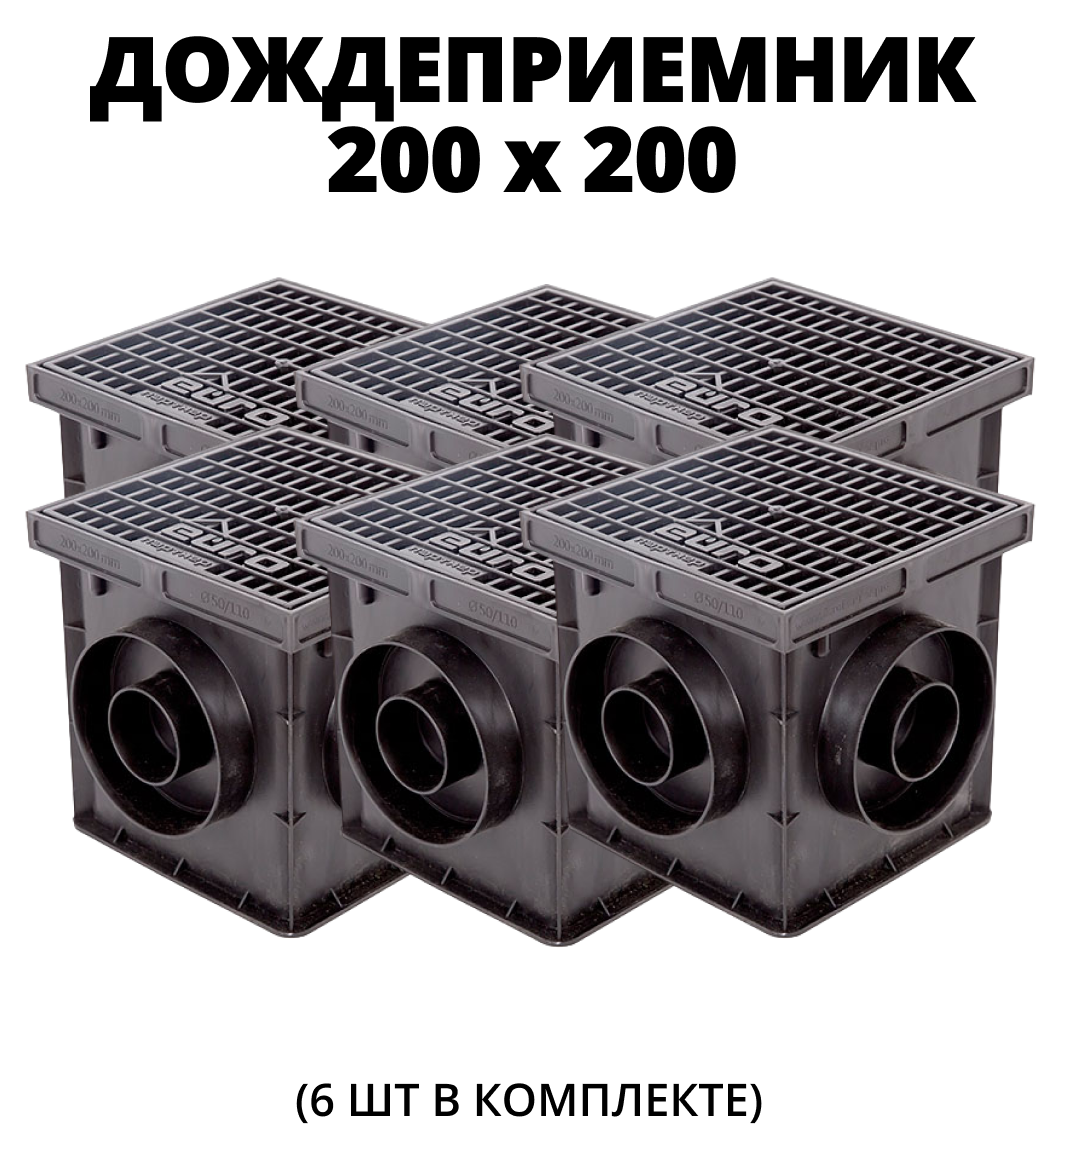 Комплект: Дождеприемник Европартнер 200х200 с пласт. решеткой + перегородка (7421), 6 шт. 0